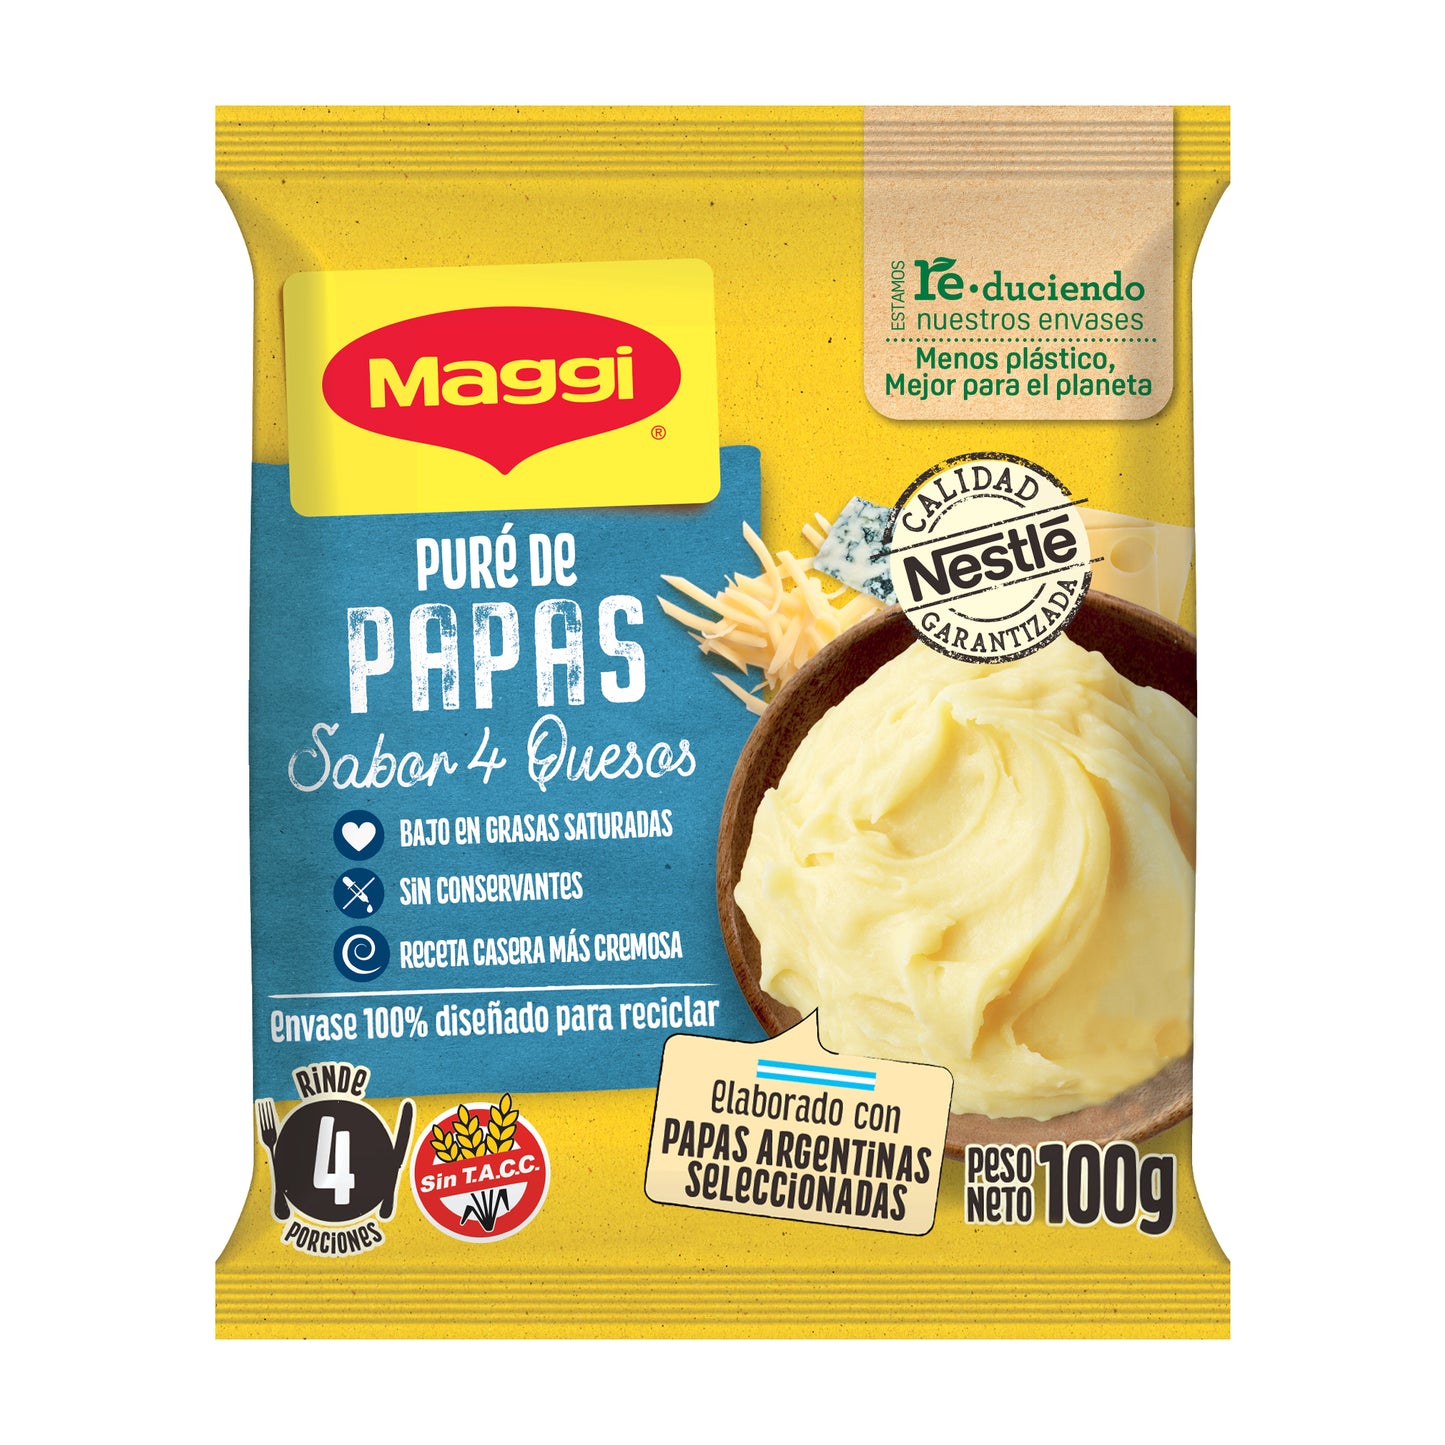 Puré de Papas MAGGI® sabor 4 Quesos - Flowpack x 100gr